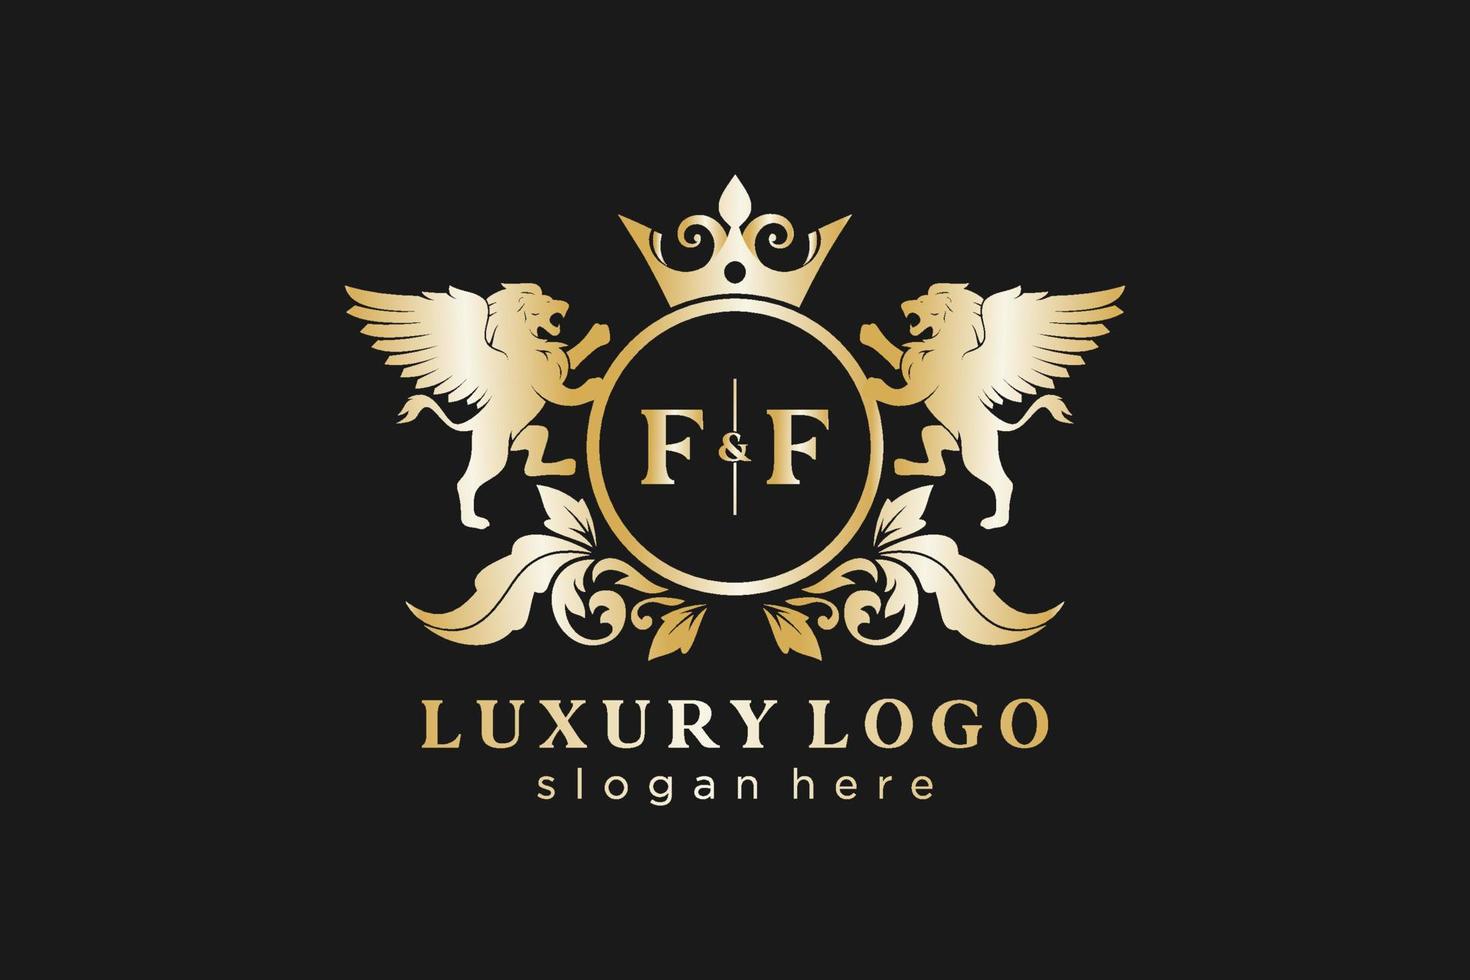 Initial ff Letter Lion Royal Luxury Logo Vorlage in Vektorgrafiken für Restaurant, Lizenzgebühren, Boutique, Café, Hotel, heraldisch, Schmuck, Mode und andere Vektorillustrationen. vektor